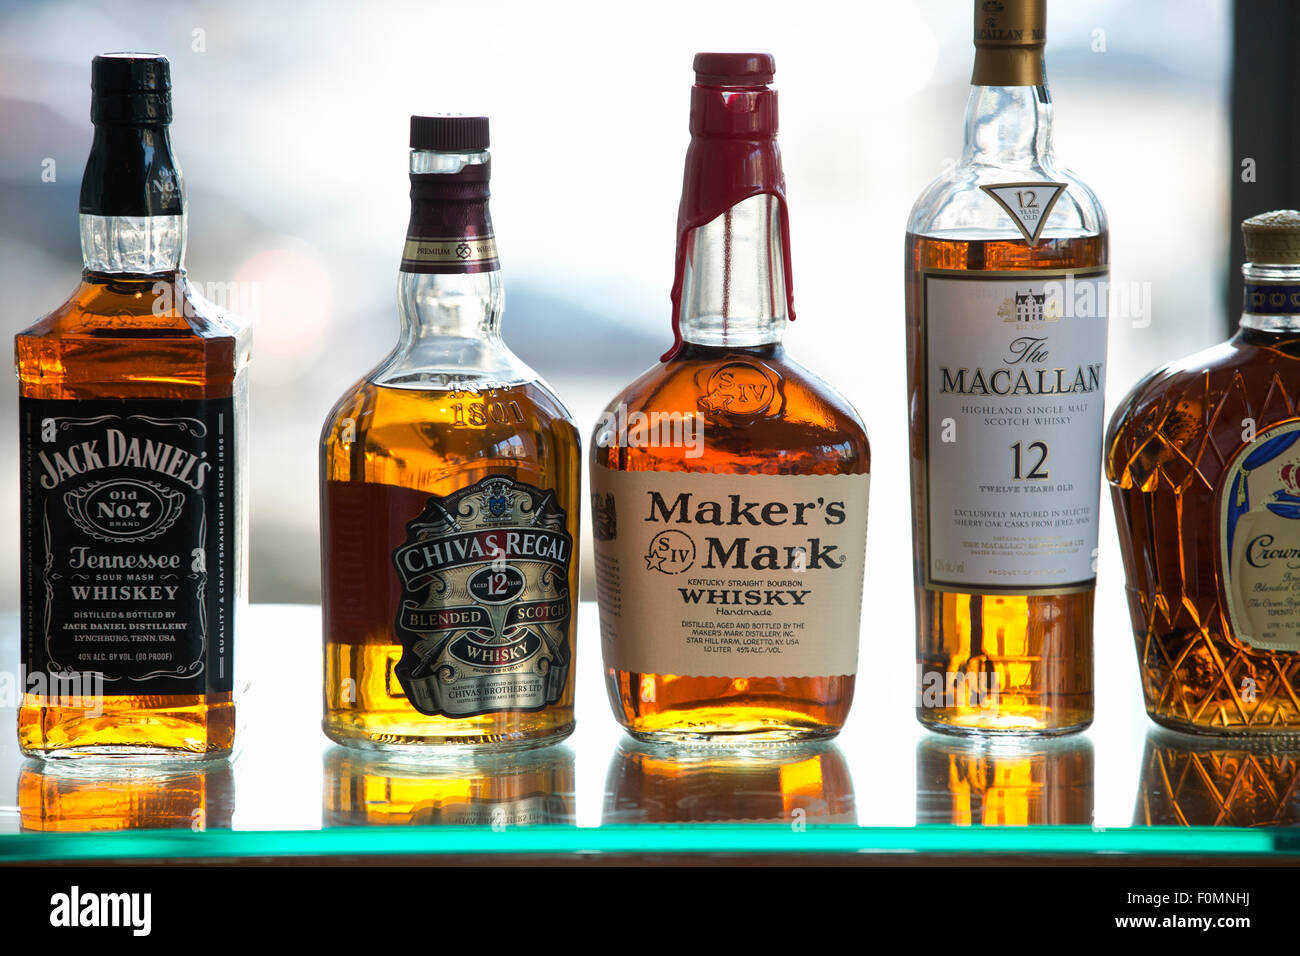 whiskey bottles shelf Stock Photo